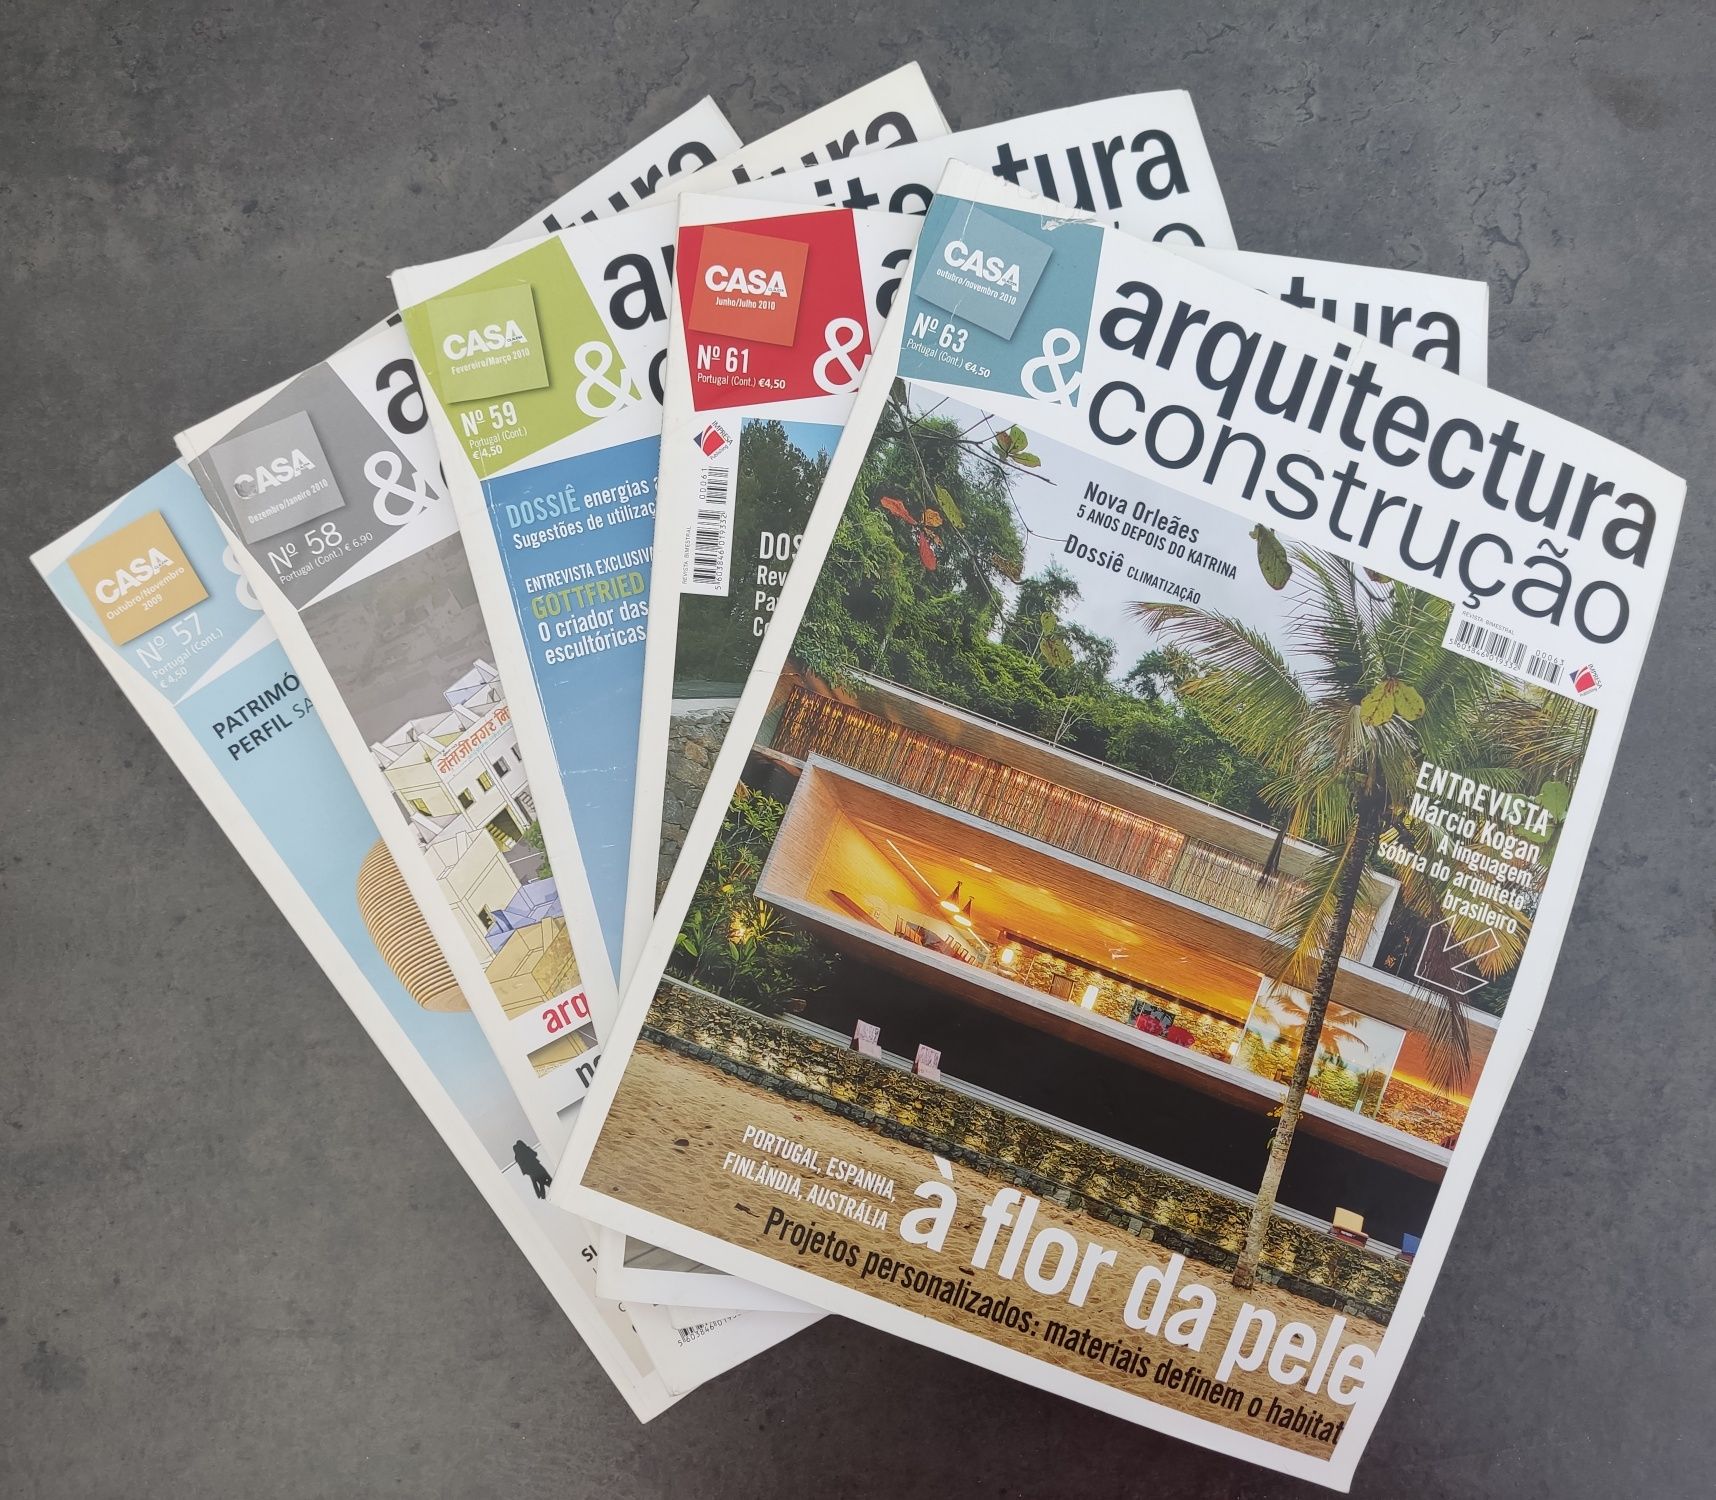 5 Revistas de Arquitectura e Construção - N°57, 58, 59, 61 e 63